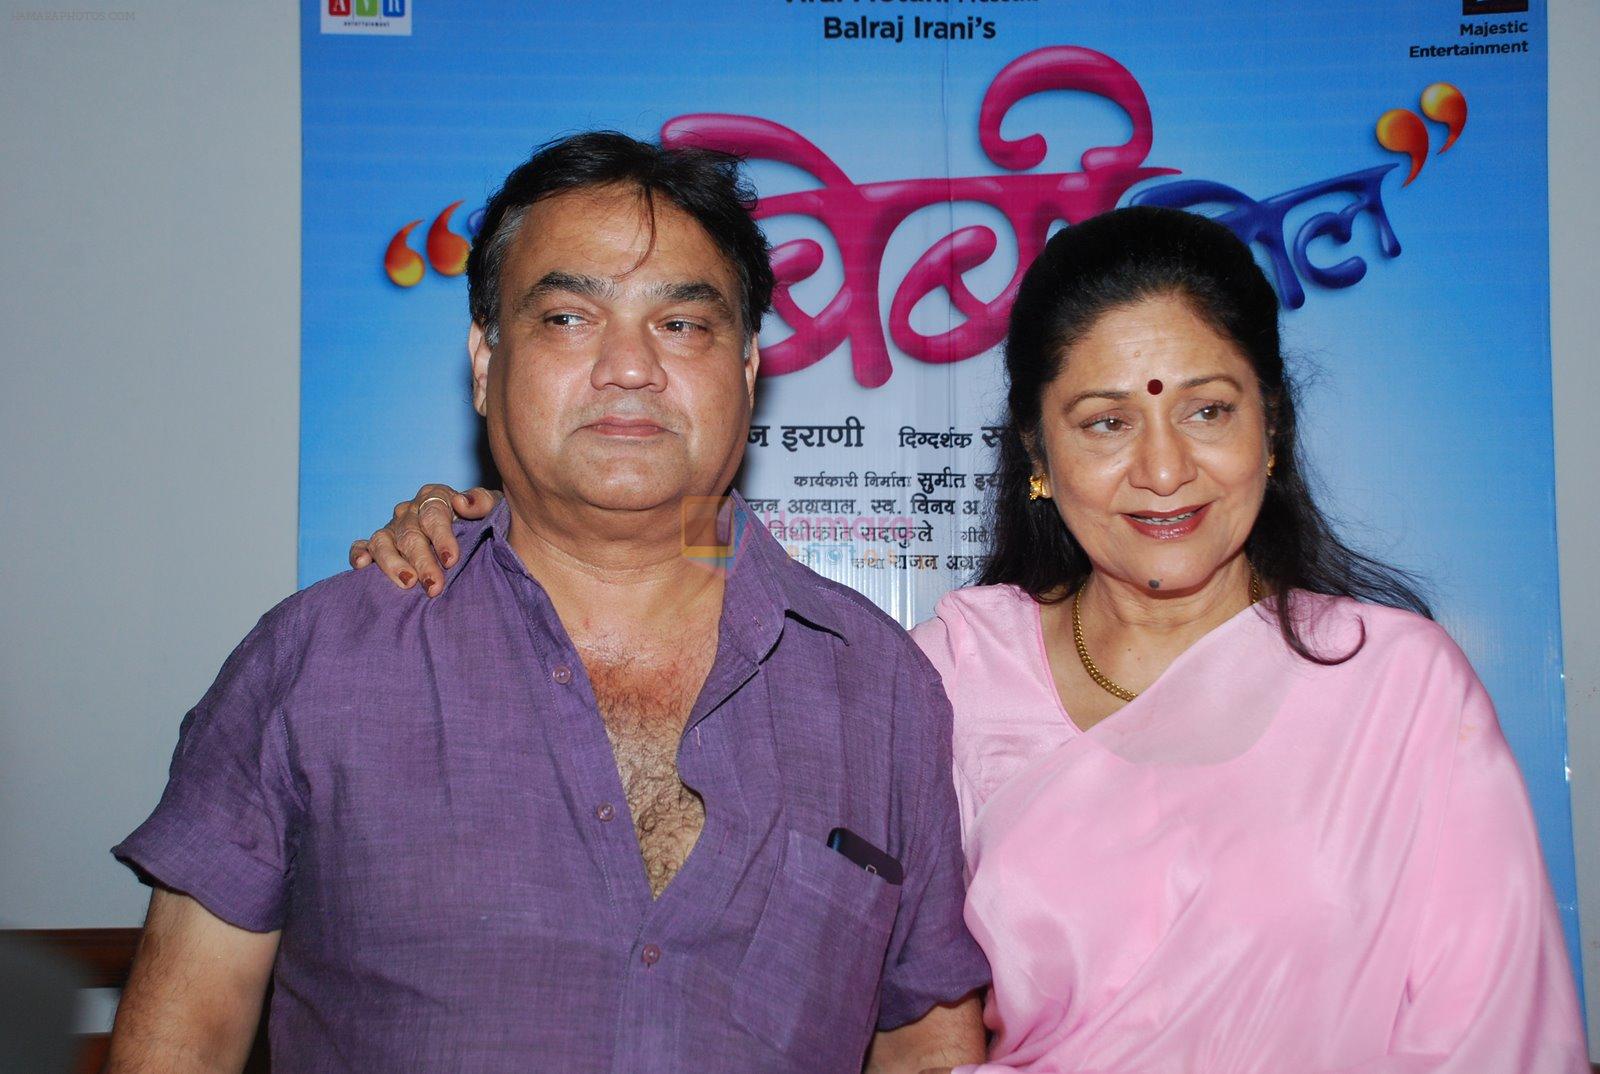 Aruna Irani at launch of Marathi Film Bol Baby Bol in Raheja Classique, Andheri on 5th Nov 2014